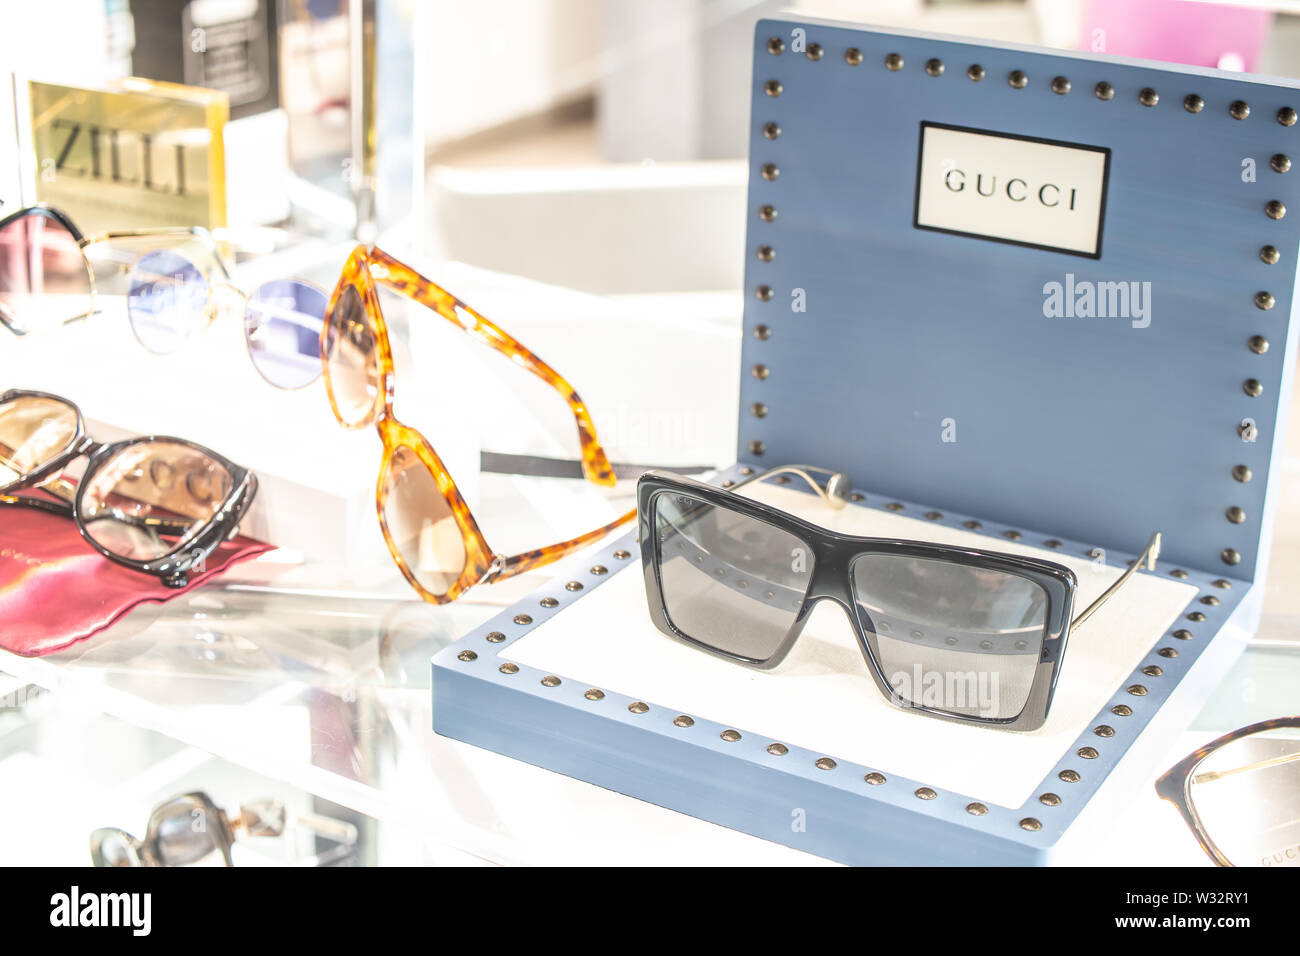 latest gucci sunglasses 2019